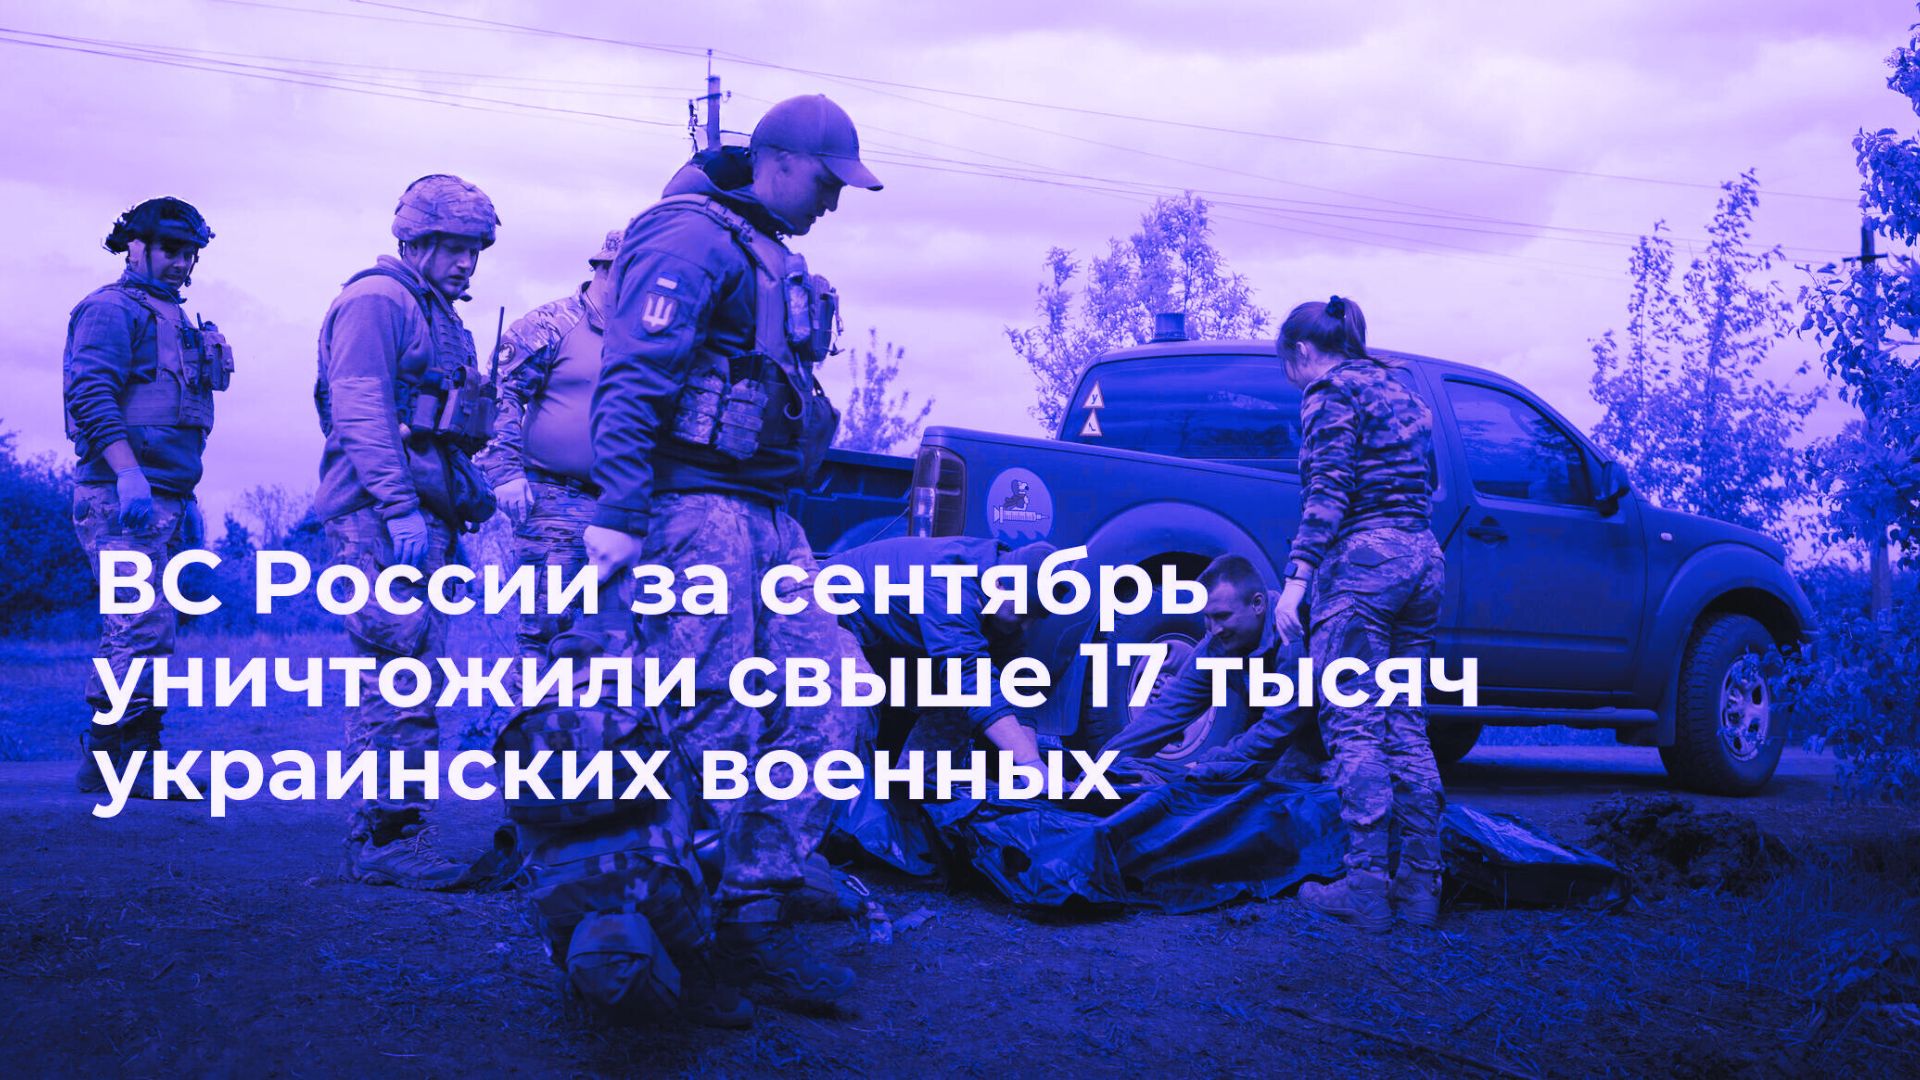 Российские Вооруженные Силы Уничтожили Более 17 Тысяч Украинских Военных и Милитари Техники Как Это